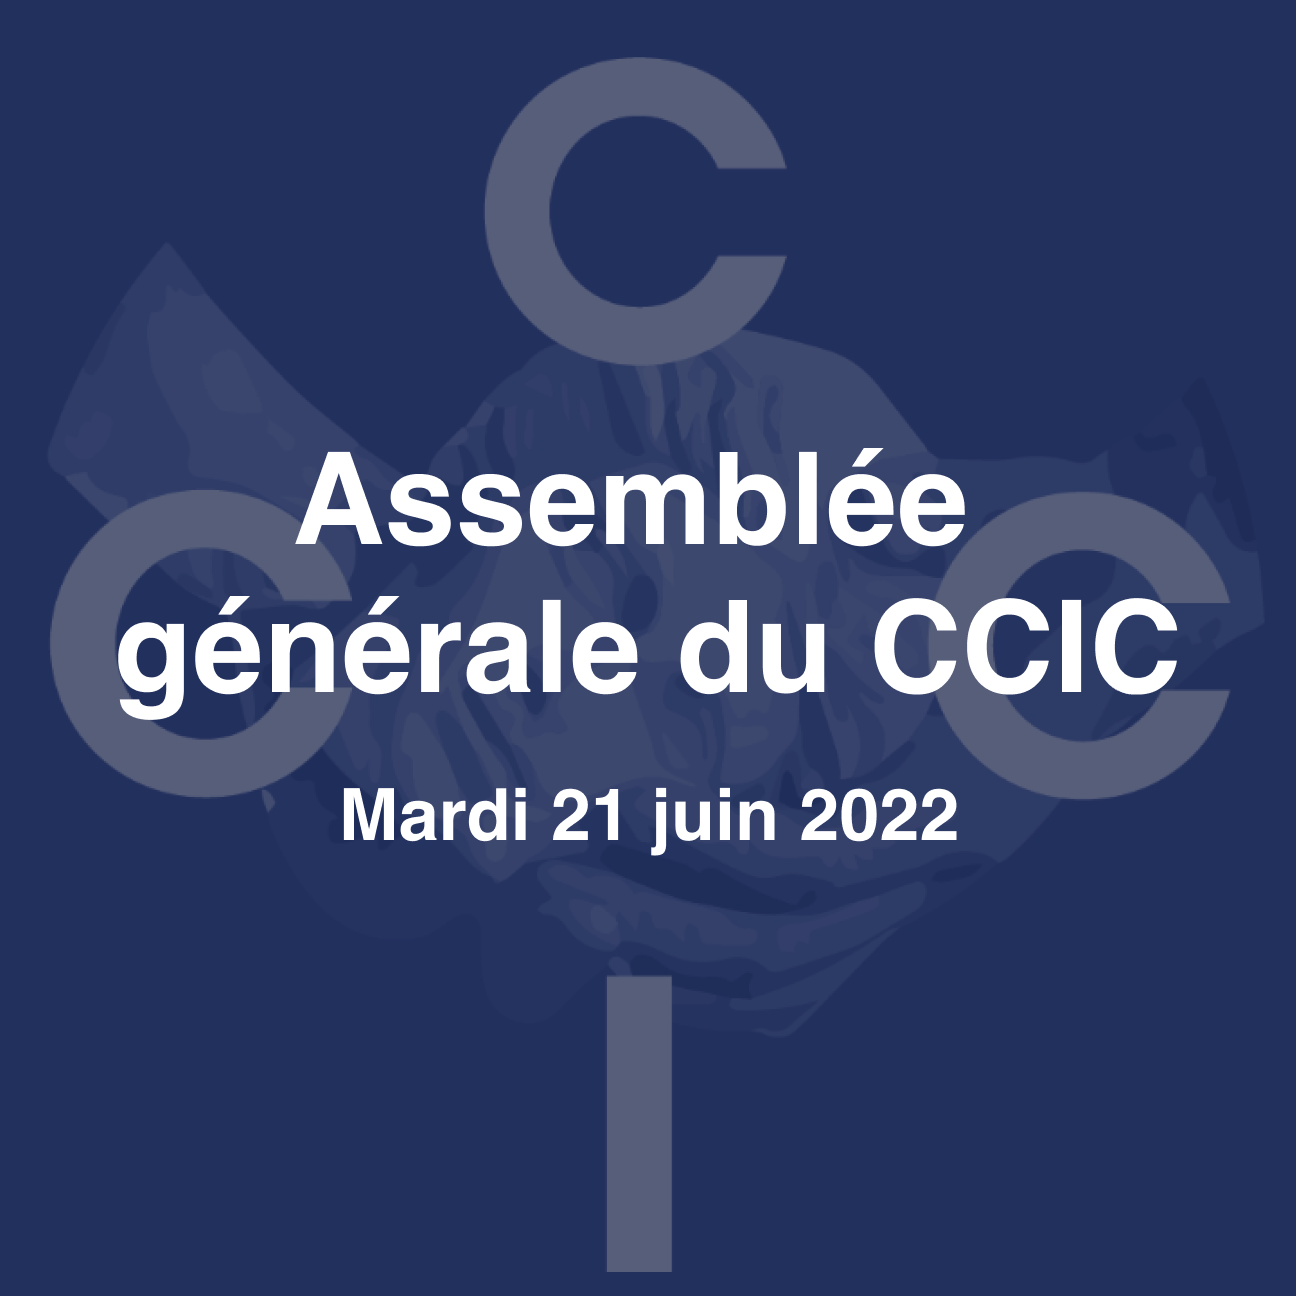 L’Assemblée Générale du CCIC s’est tenue le 21 juin 2022. En voici les faits saillants.